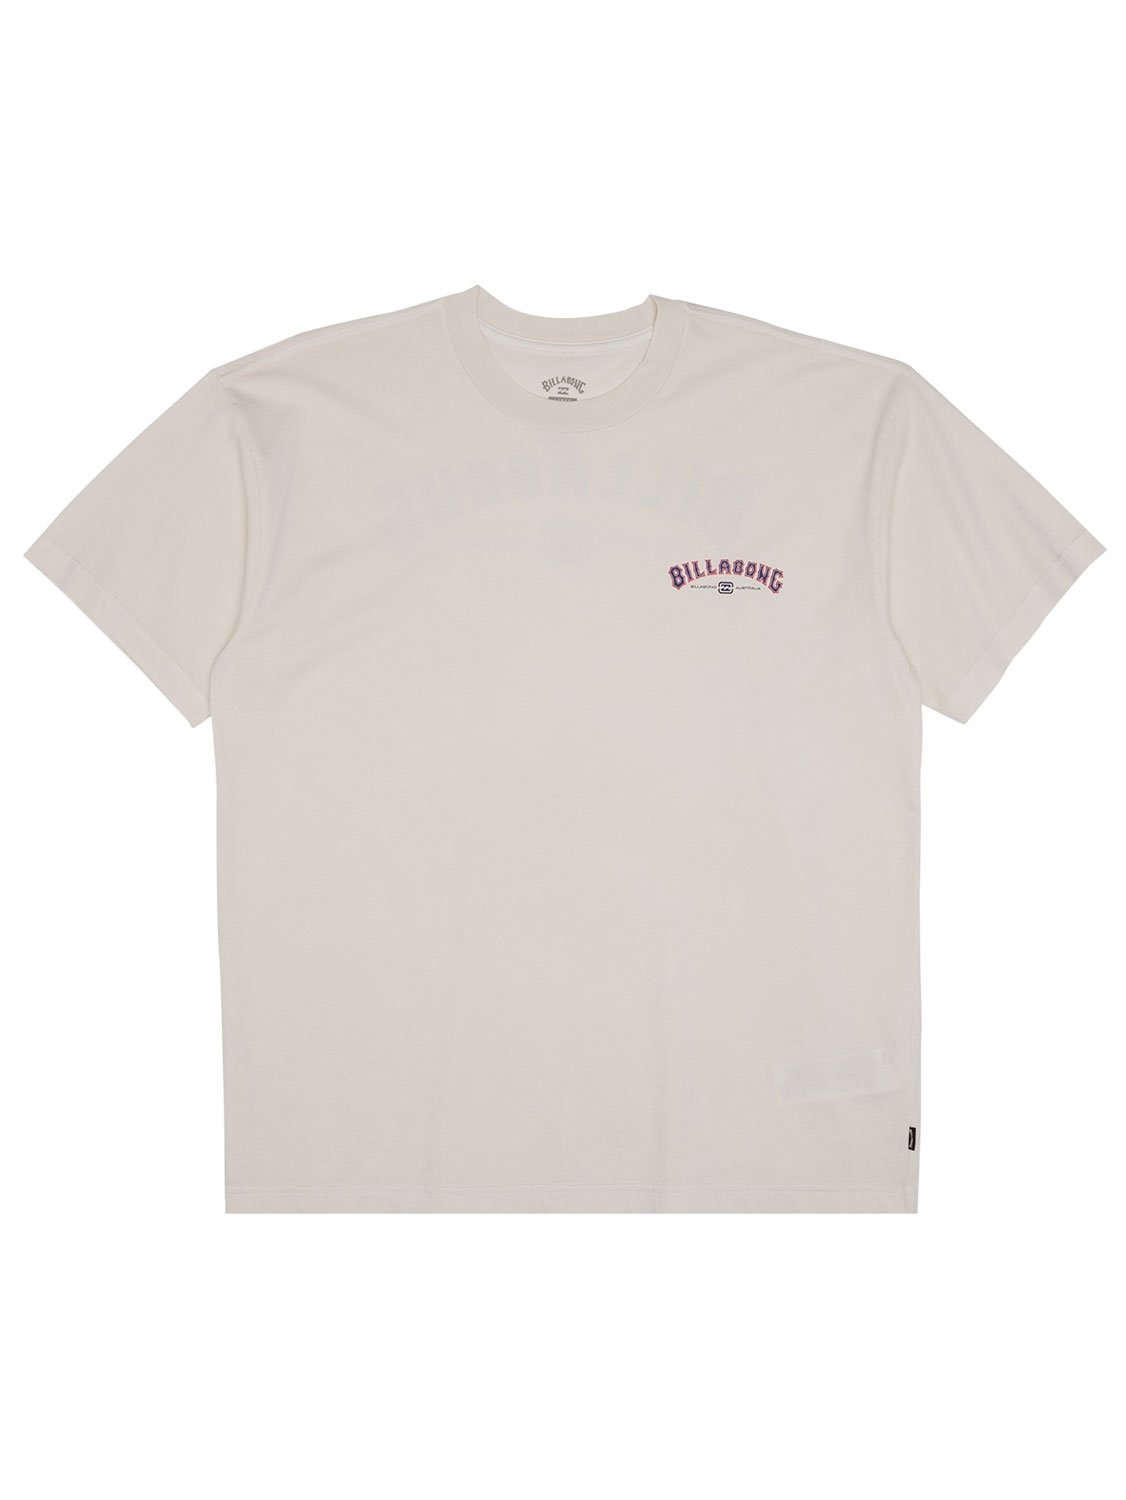 Billabong Men's Arch Wave T-Shirt